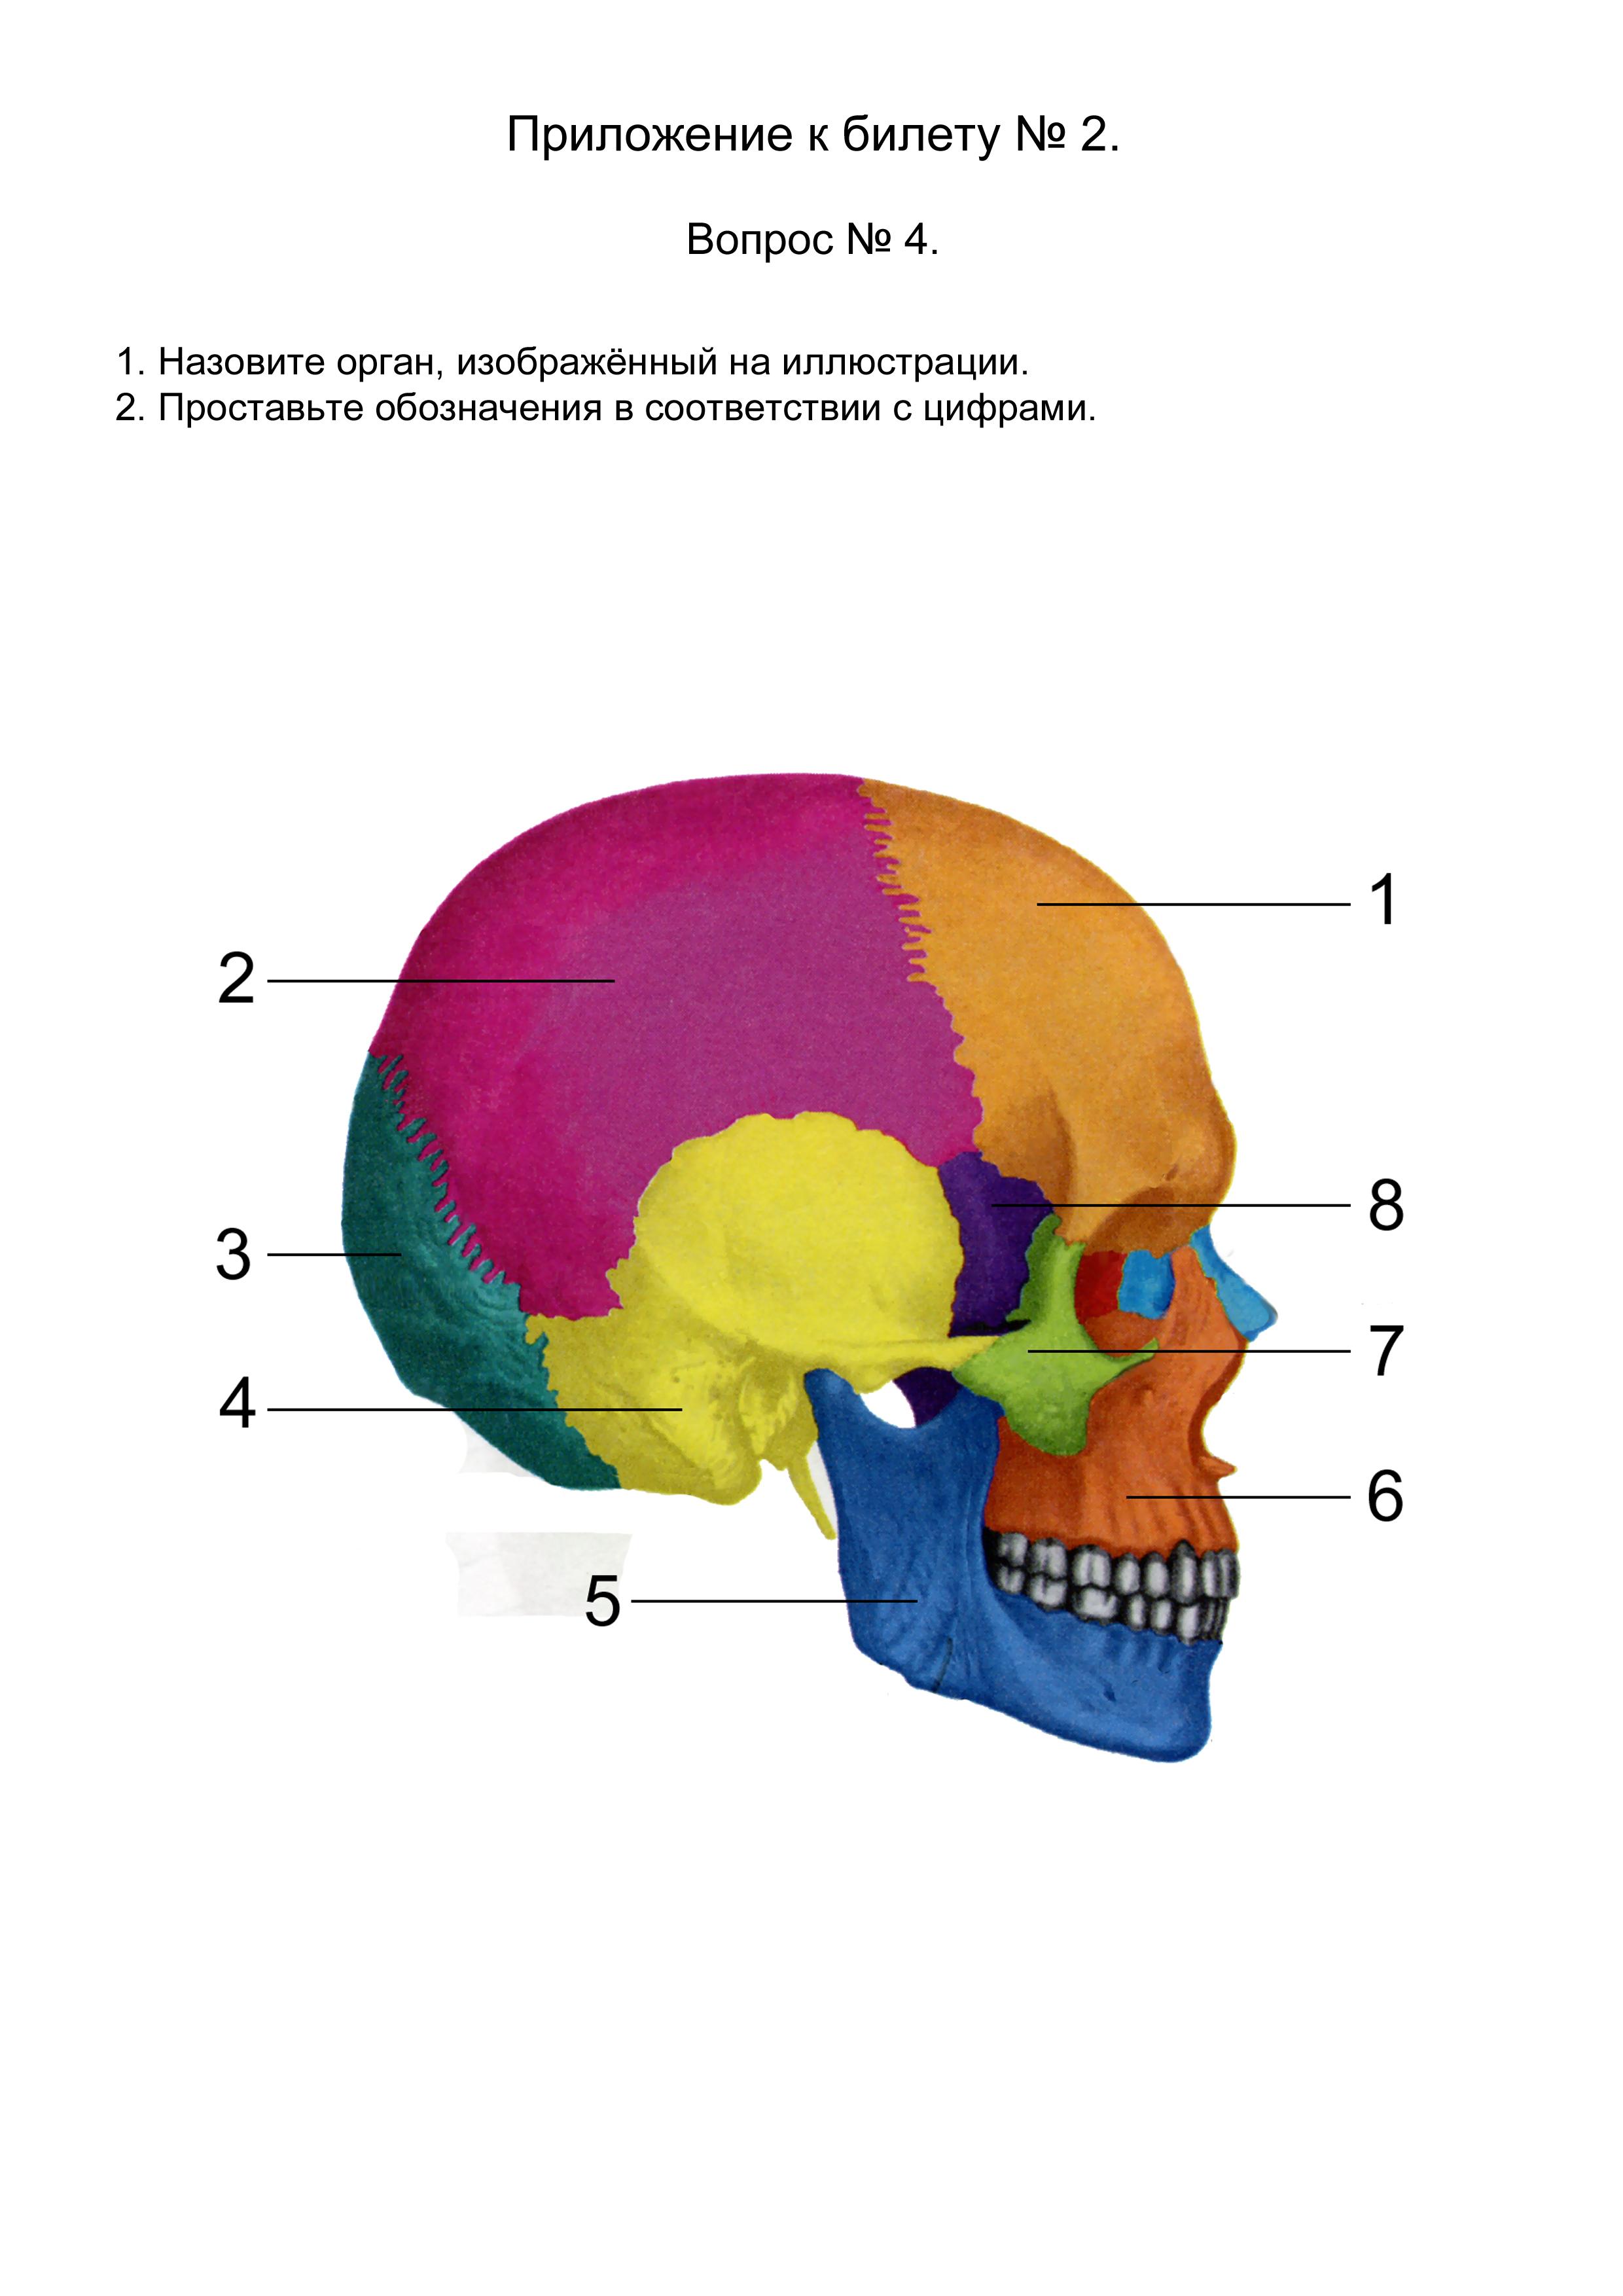 Теменная затылочная кость. Швы черепа сбоку. Кости черепа сбоку швы. Кости лицевого отдела черепа сбоку. Швы мозговой части черепа.